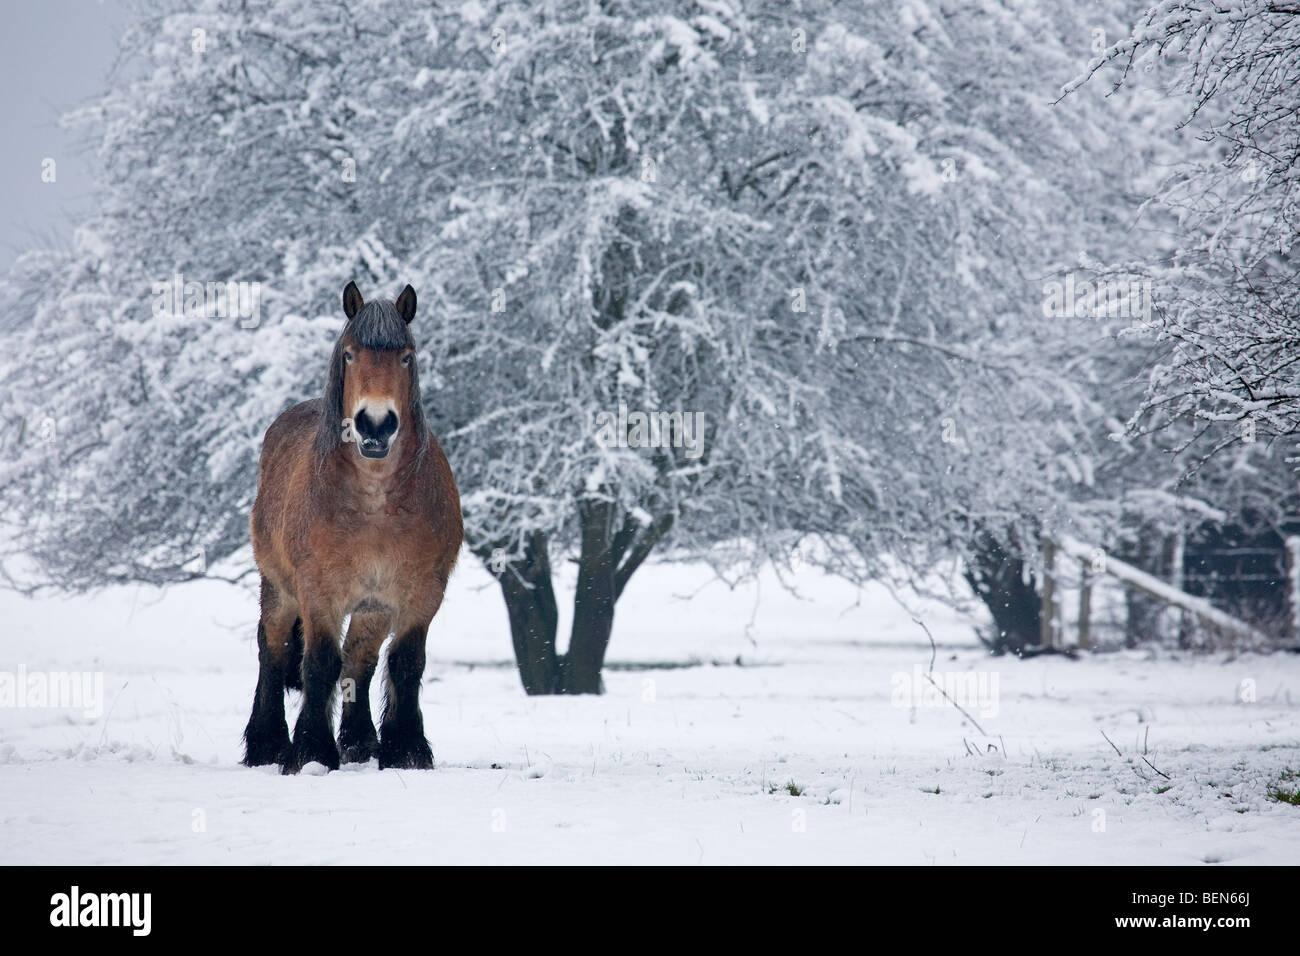 Belgian horse / Belgian Heavy Horse / Brabant (Equus caballus) in the snow in winter landscape, Belgium Stock Photo